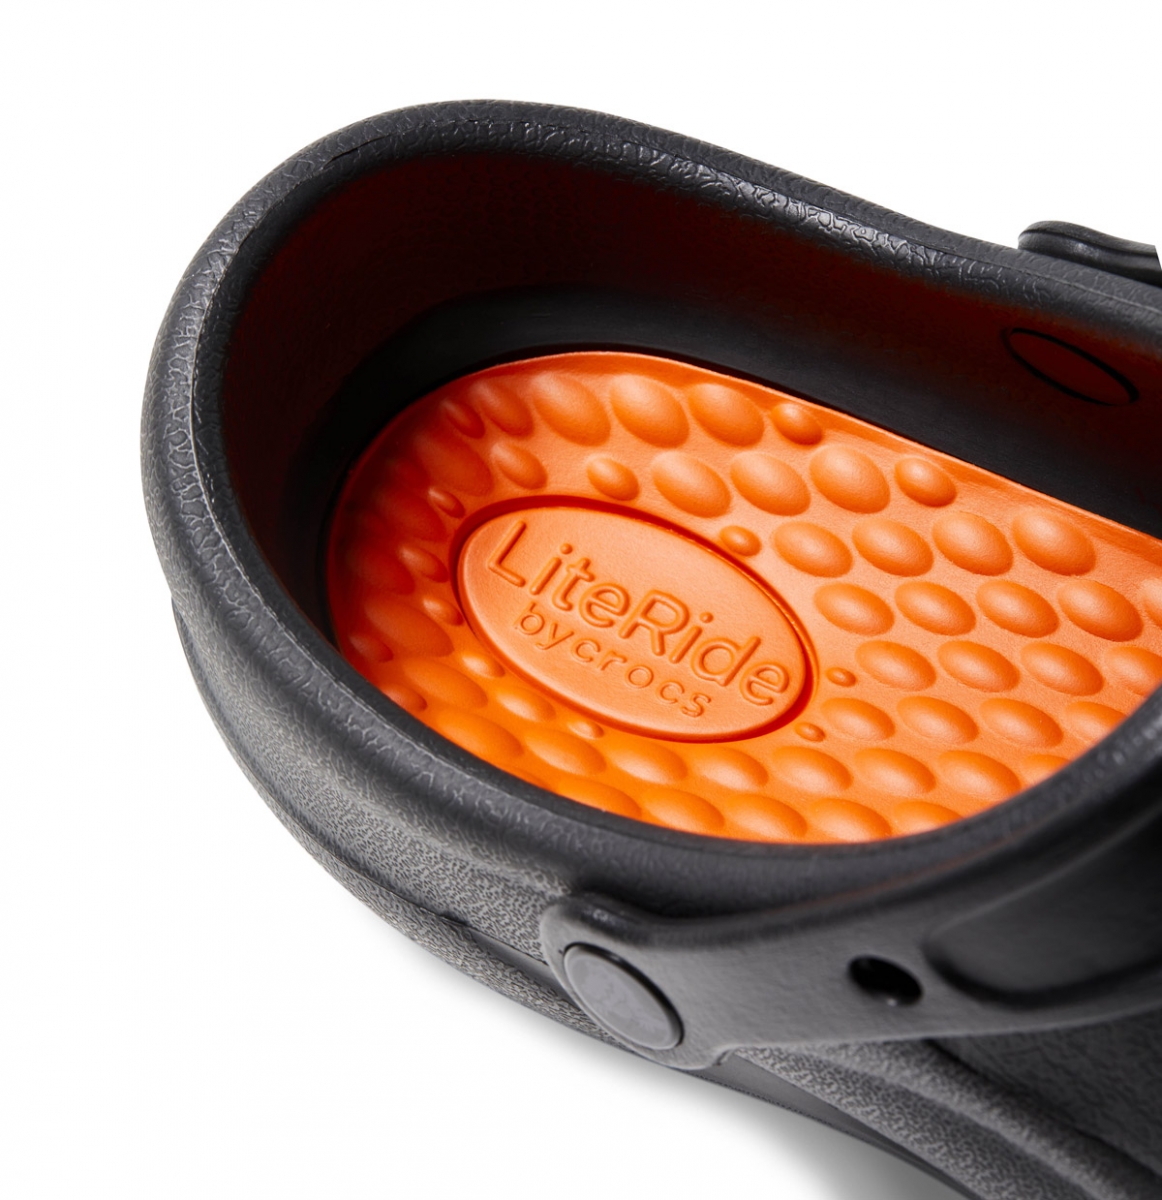 Pánská a dámská pracovní obuv Crocs Bistro Pro LiteRide™ Clog se stélkou z inovativního materiálu Crocs LiteRide™